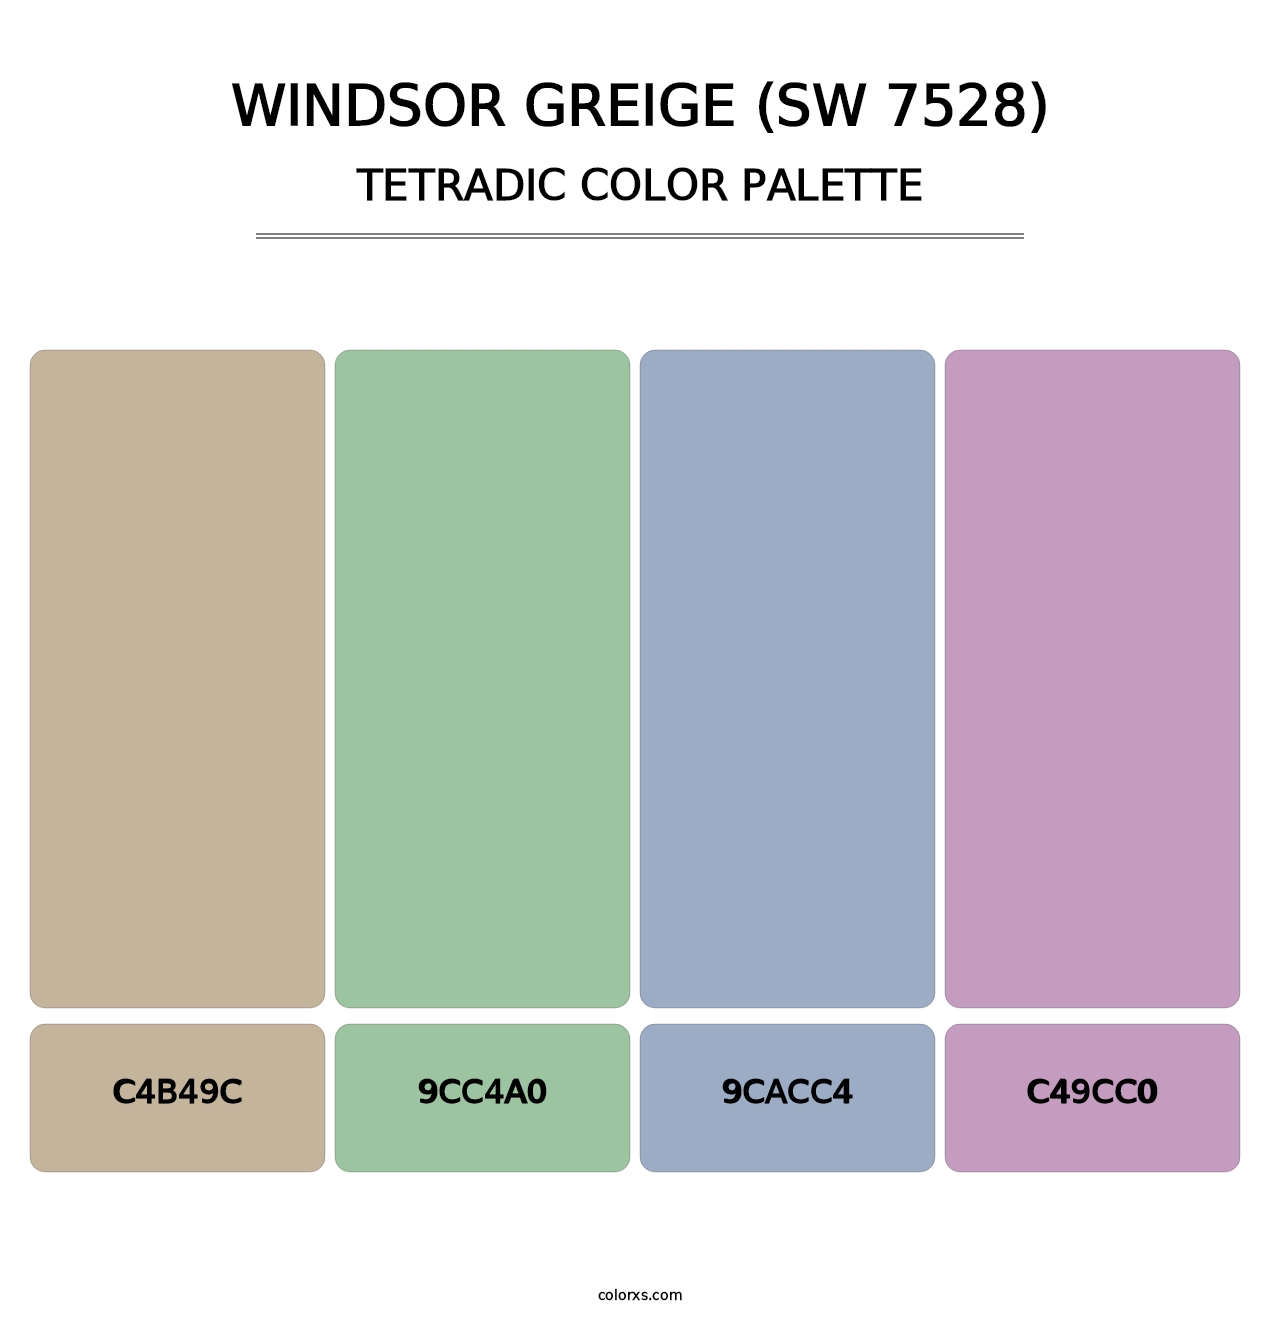 Windsor Greige (SW 7528) - Tetradic Color Palette